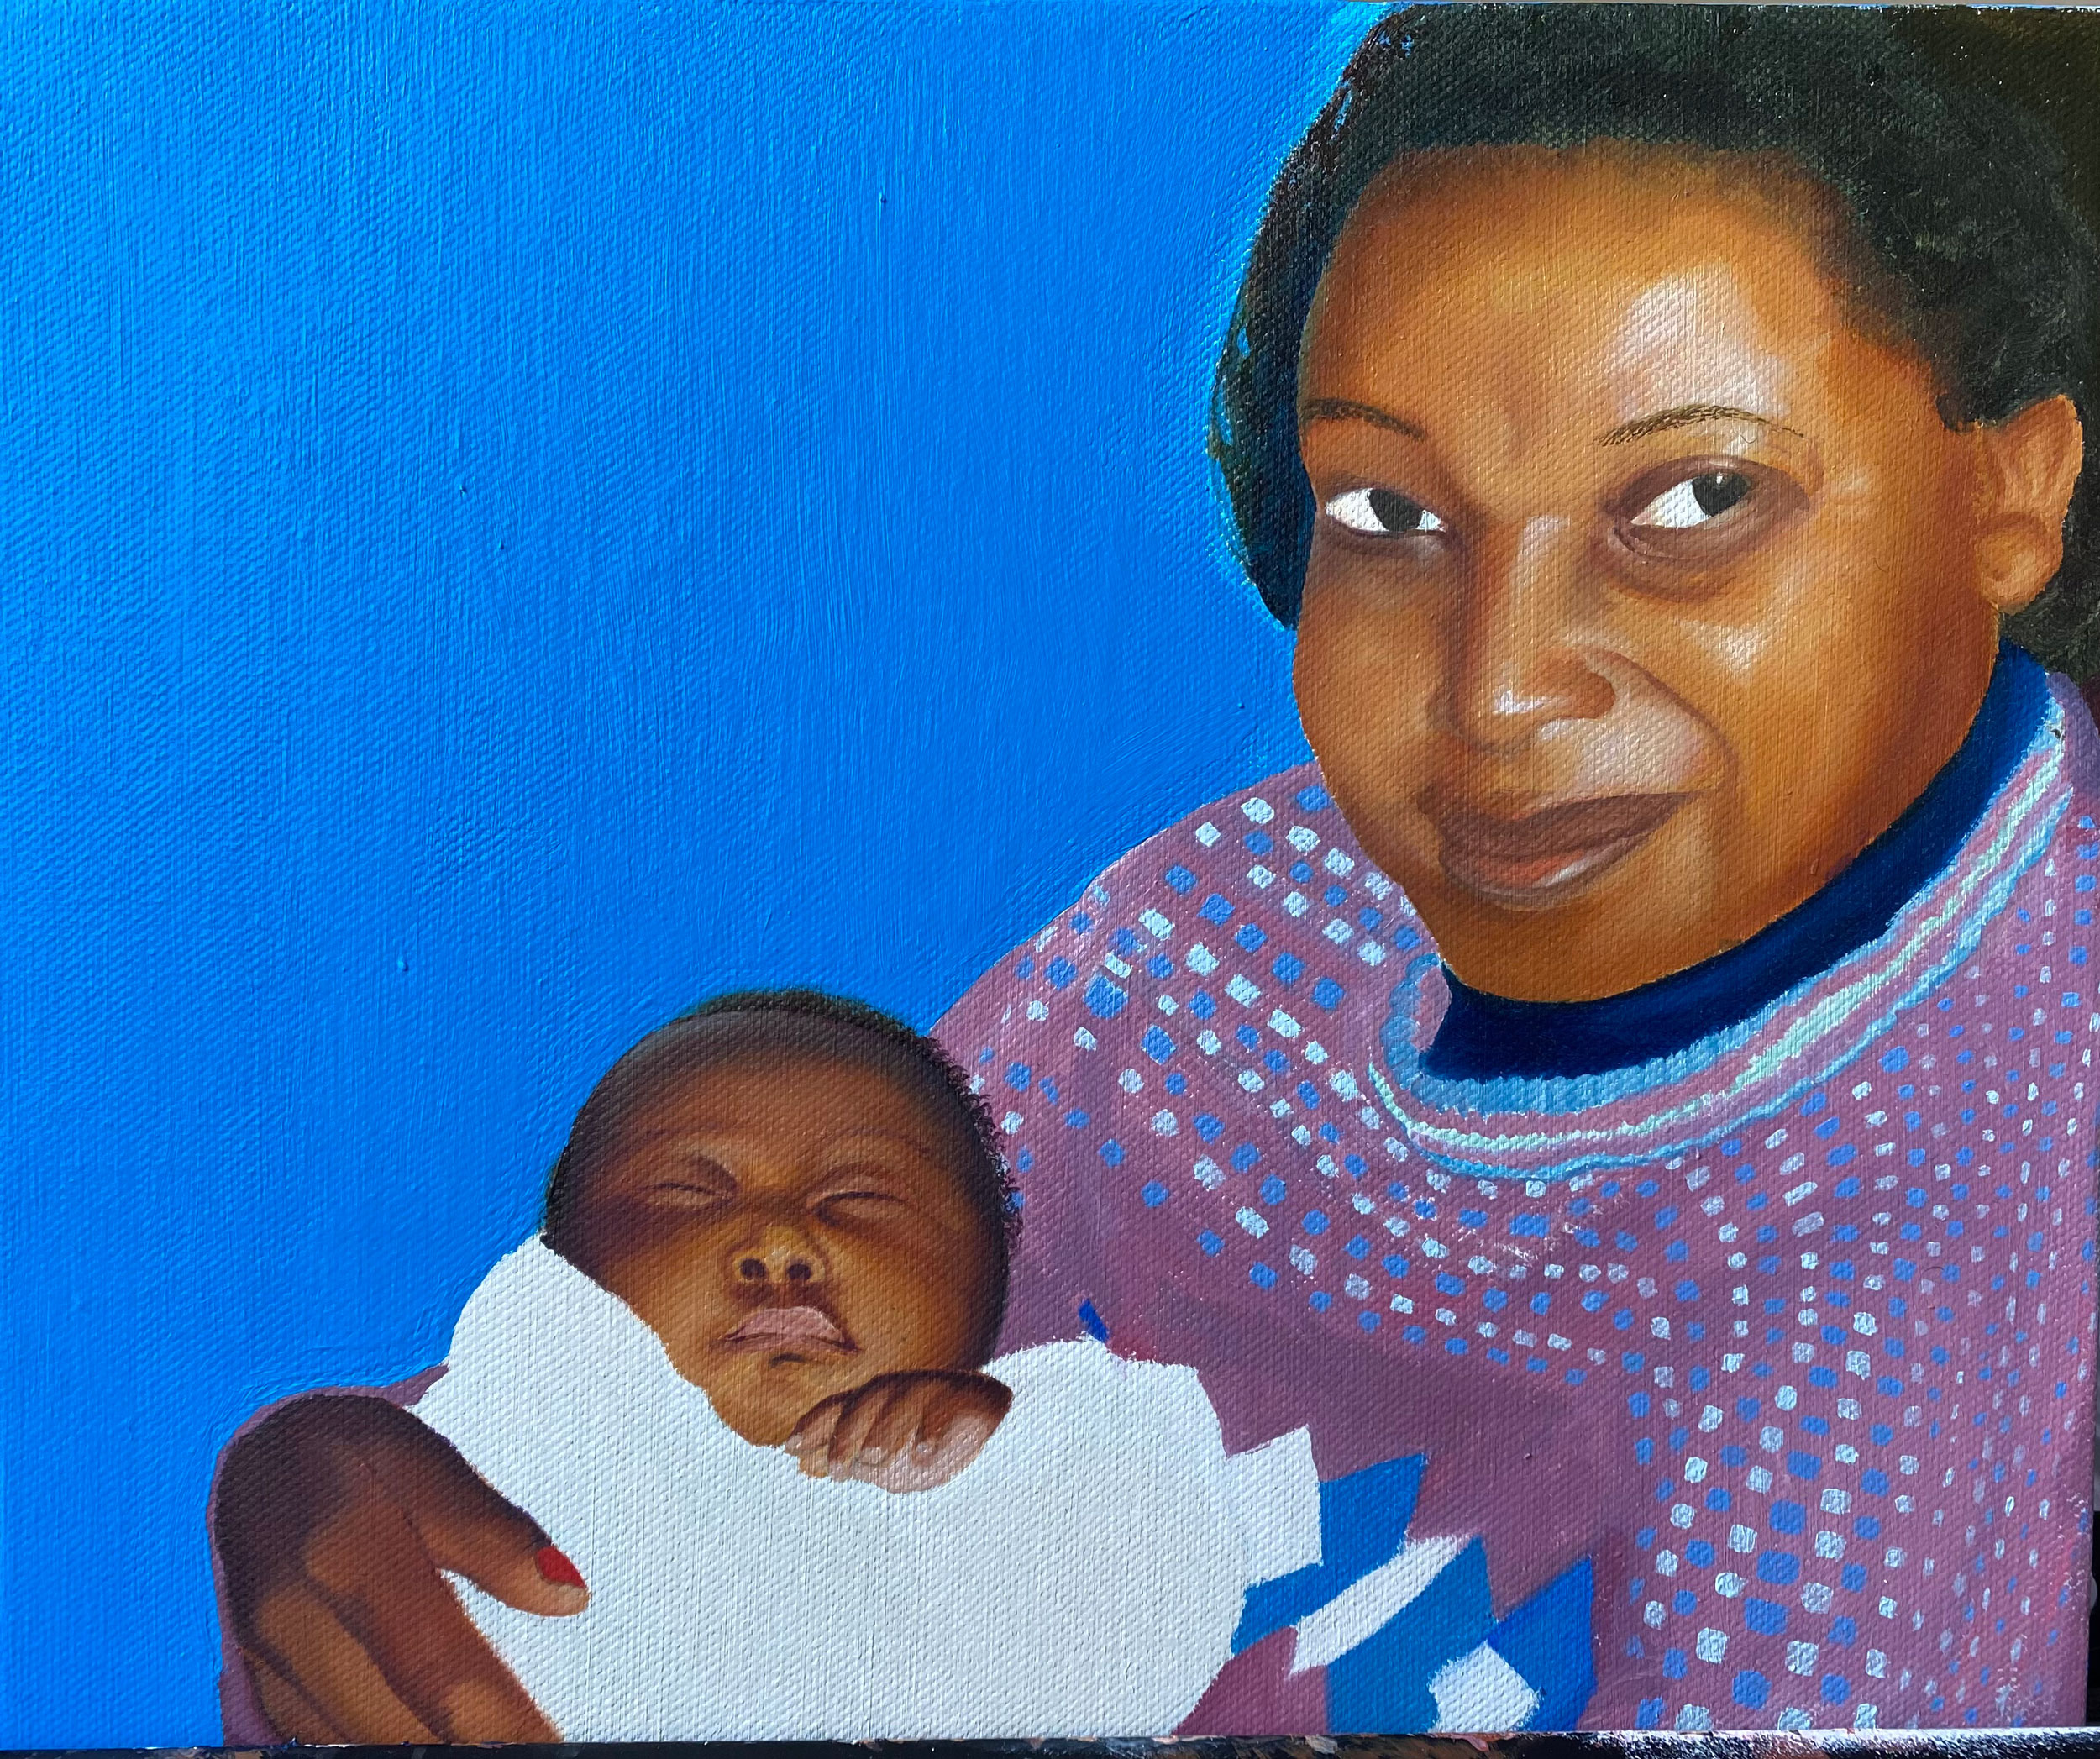 BA Fine Art work by Clara Mukasa showing a woman cradling an infant.